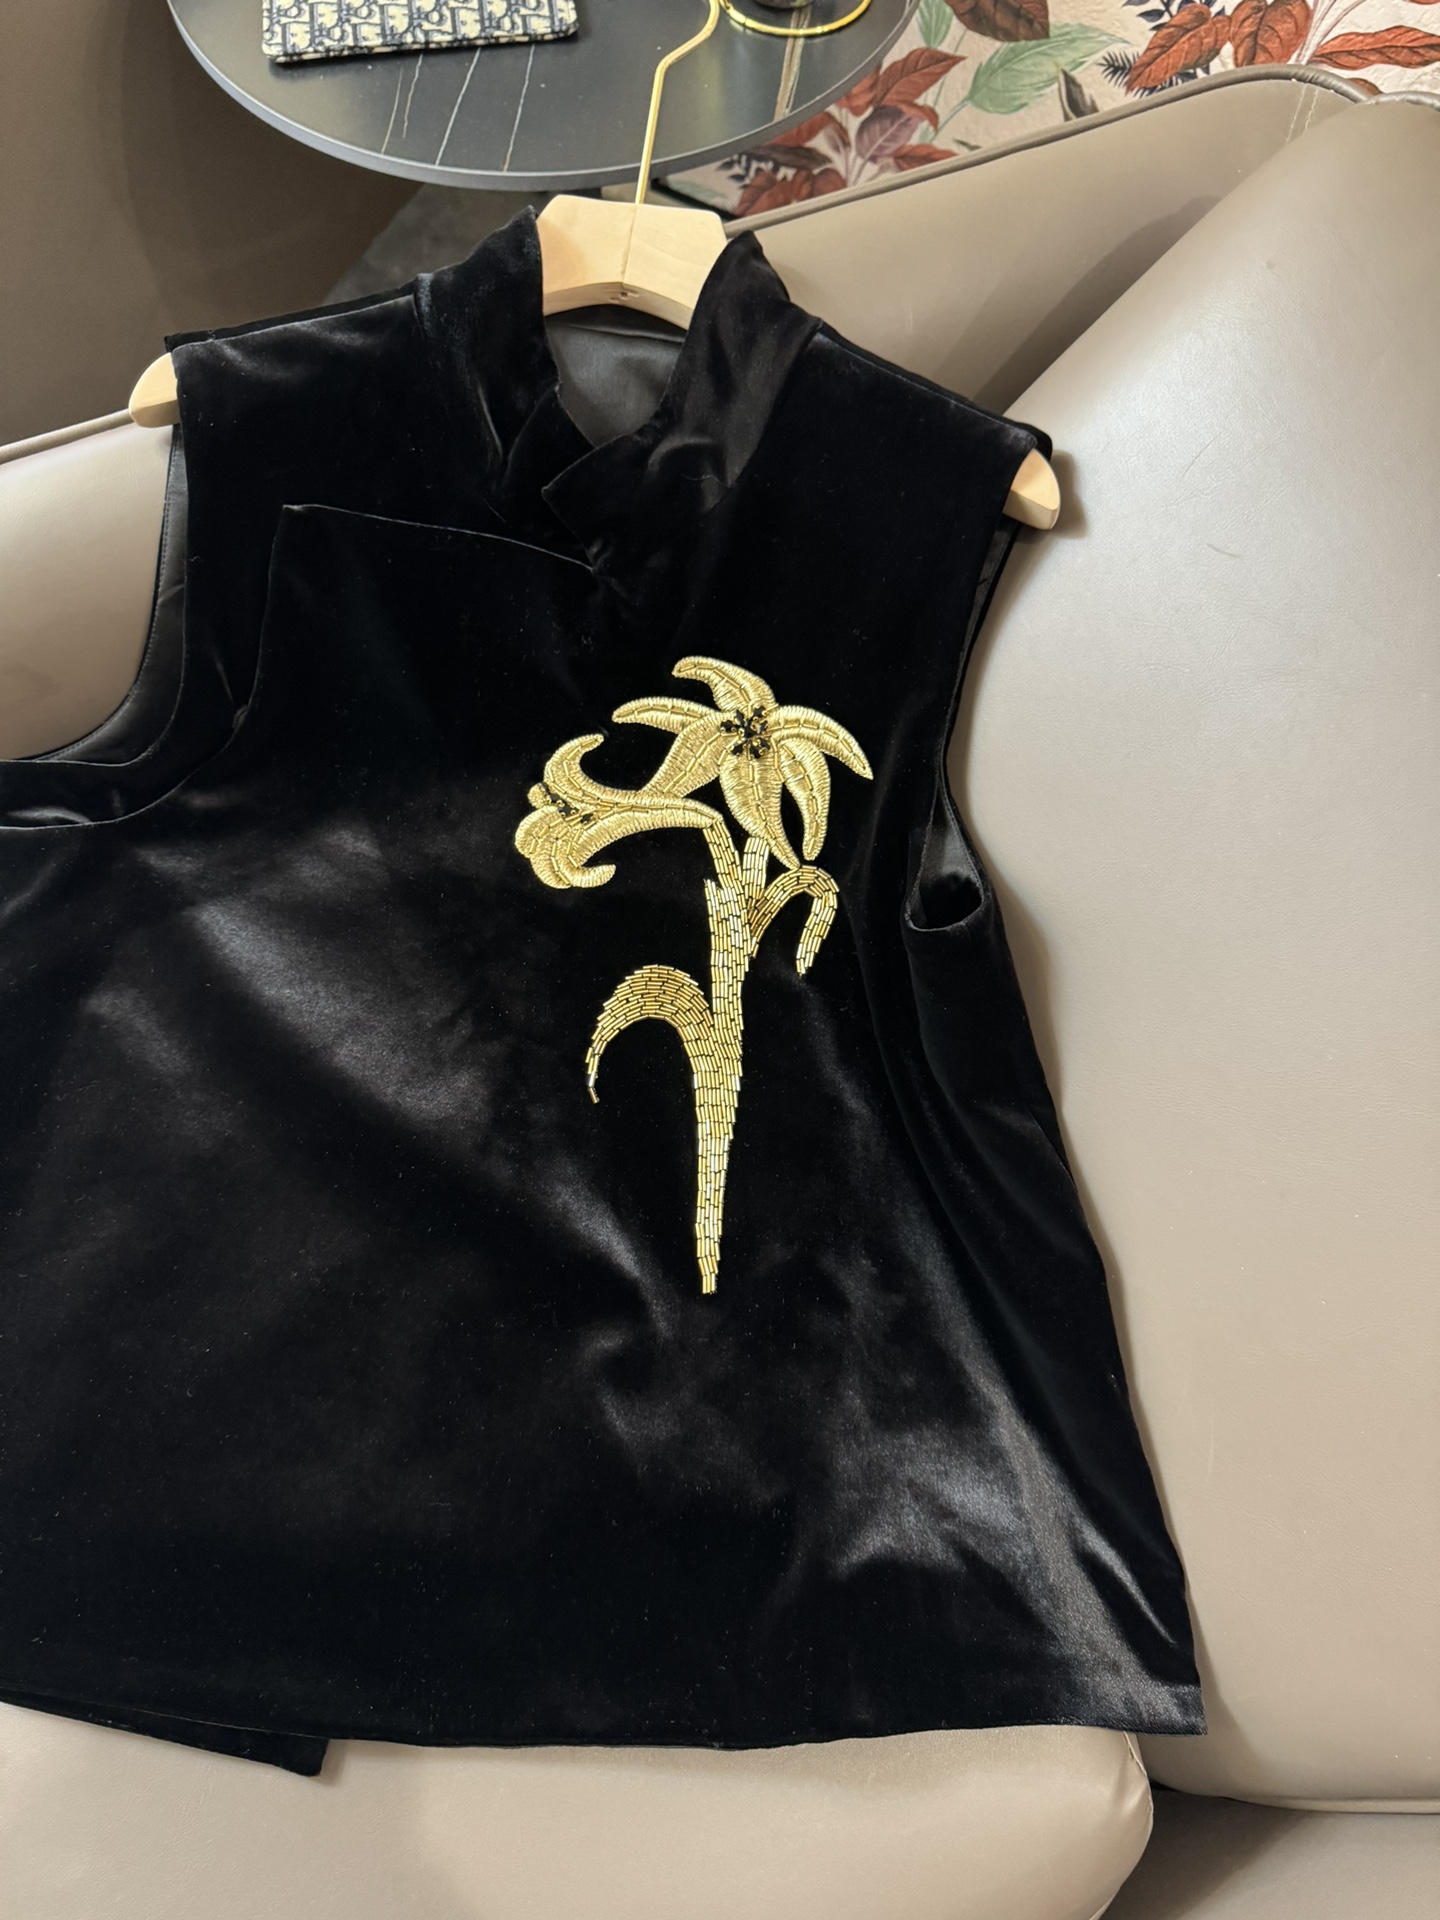 XZ24019#新款套装M新中式珠绣重工真丝绒背心上衣长裤套装黑色SMLXL